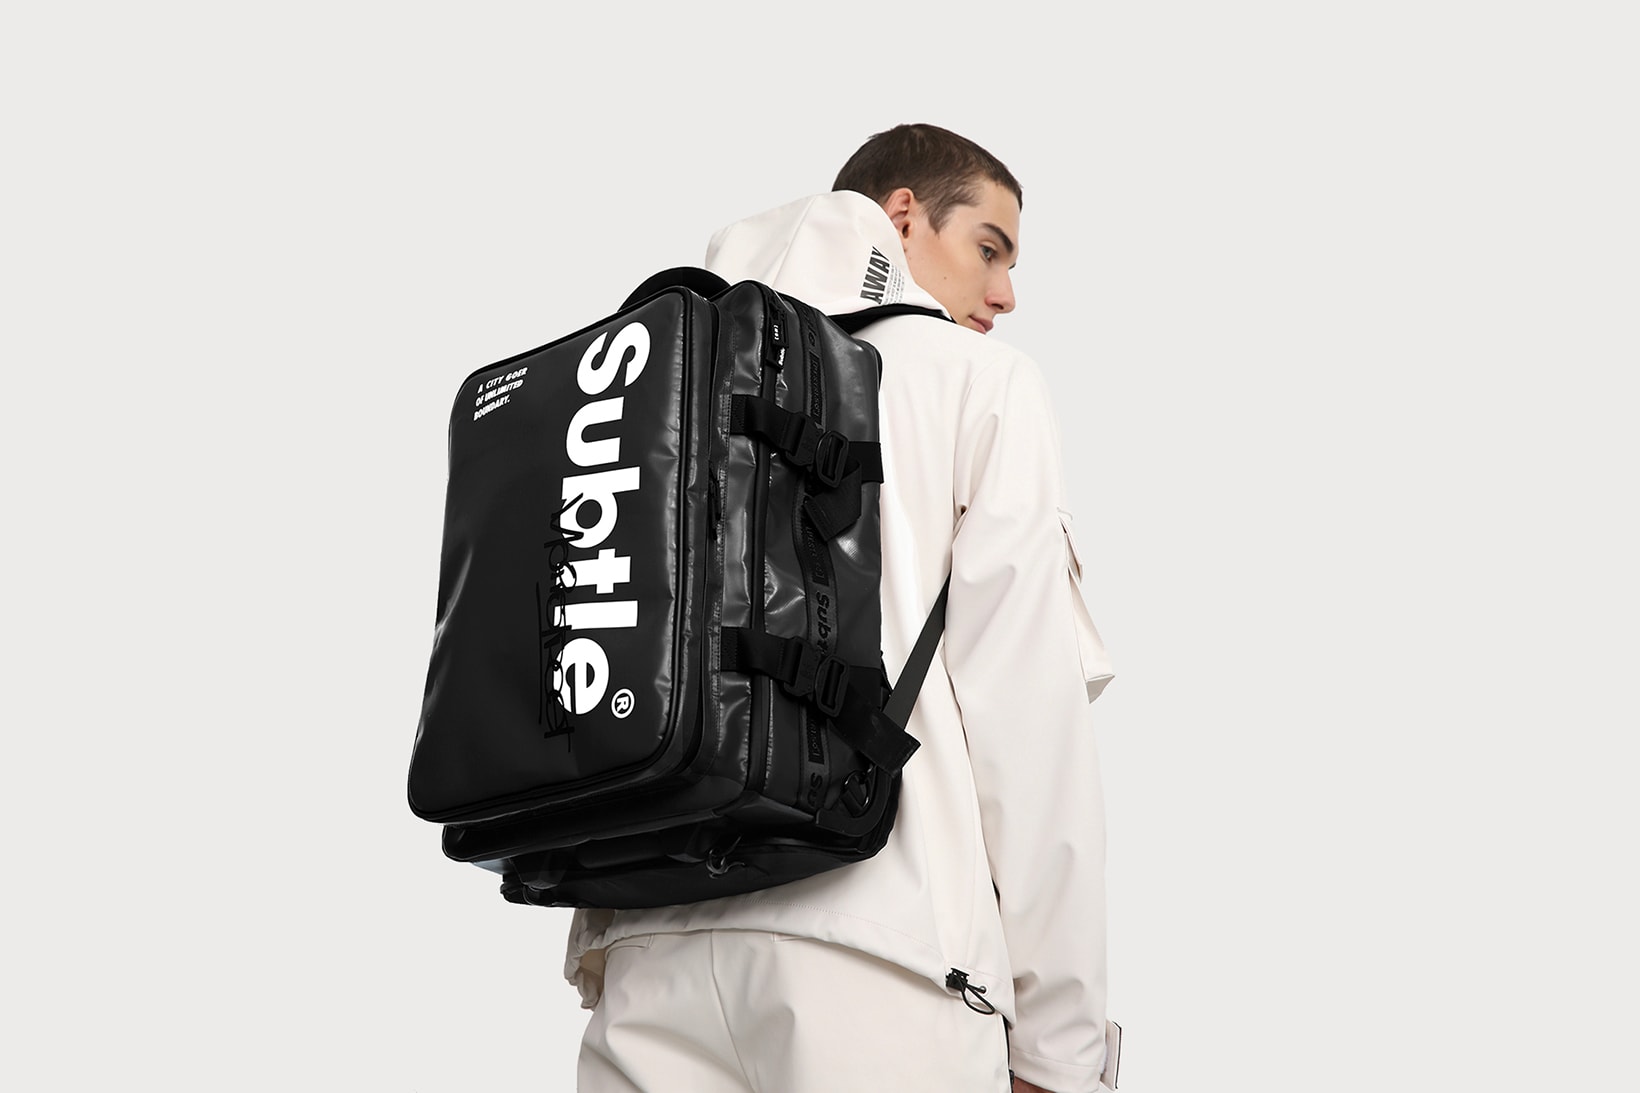 Subtle Presents Dual-Purpose AFAR Suitcase Back Pack Airport Travel